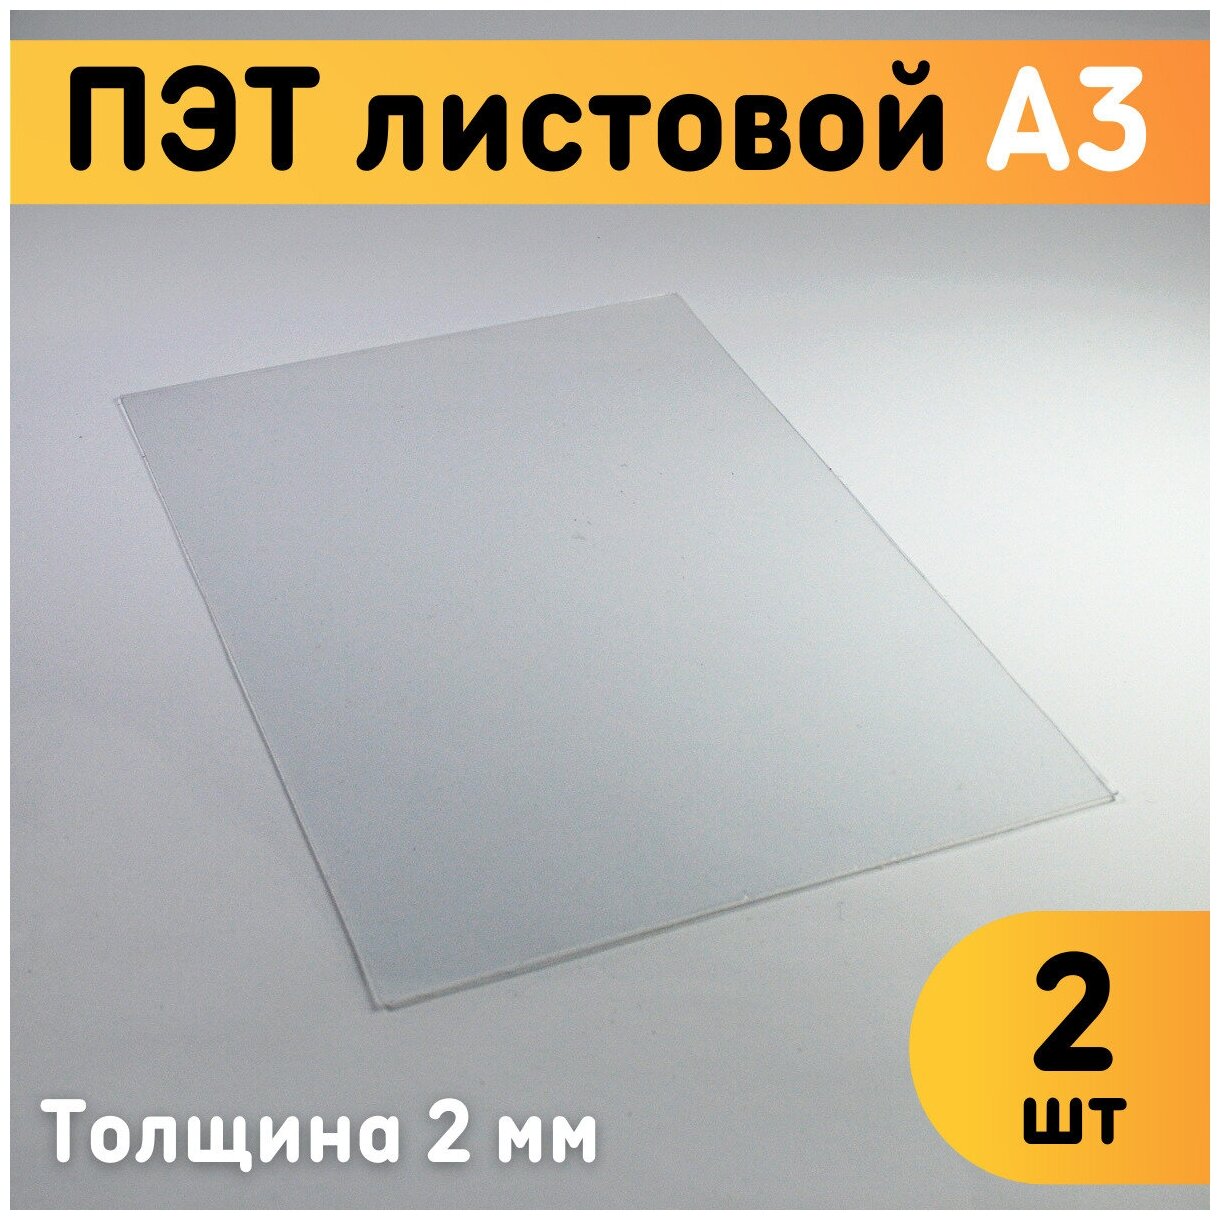 ПЭТ листовой прозрачный А3 297х420 мм толщина 2 мм комплект 2 шт. / Пластик листовой прозрачный 2 мм